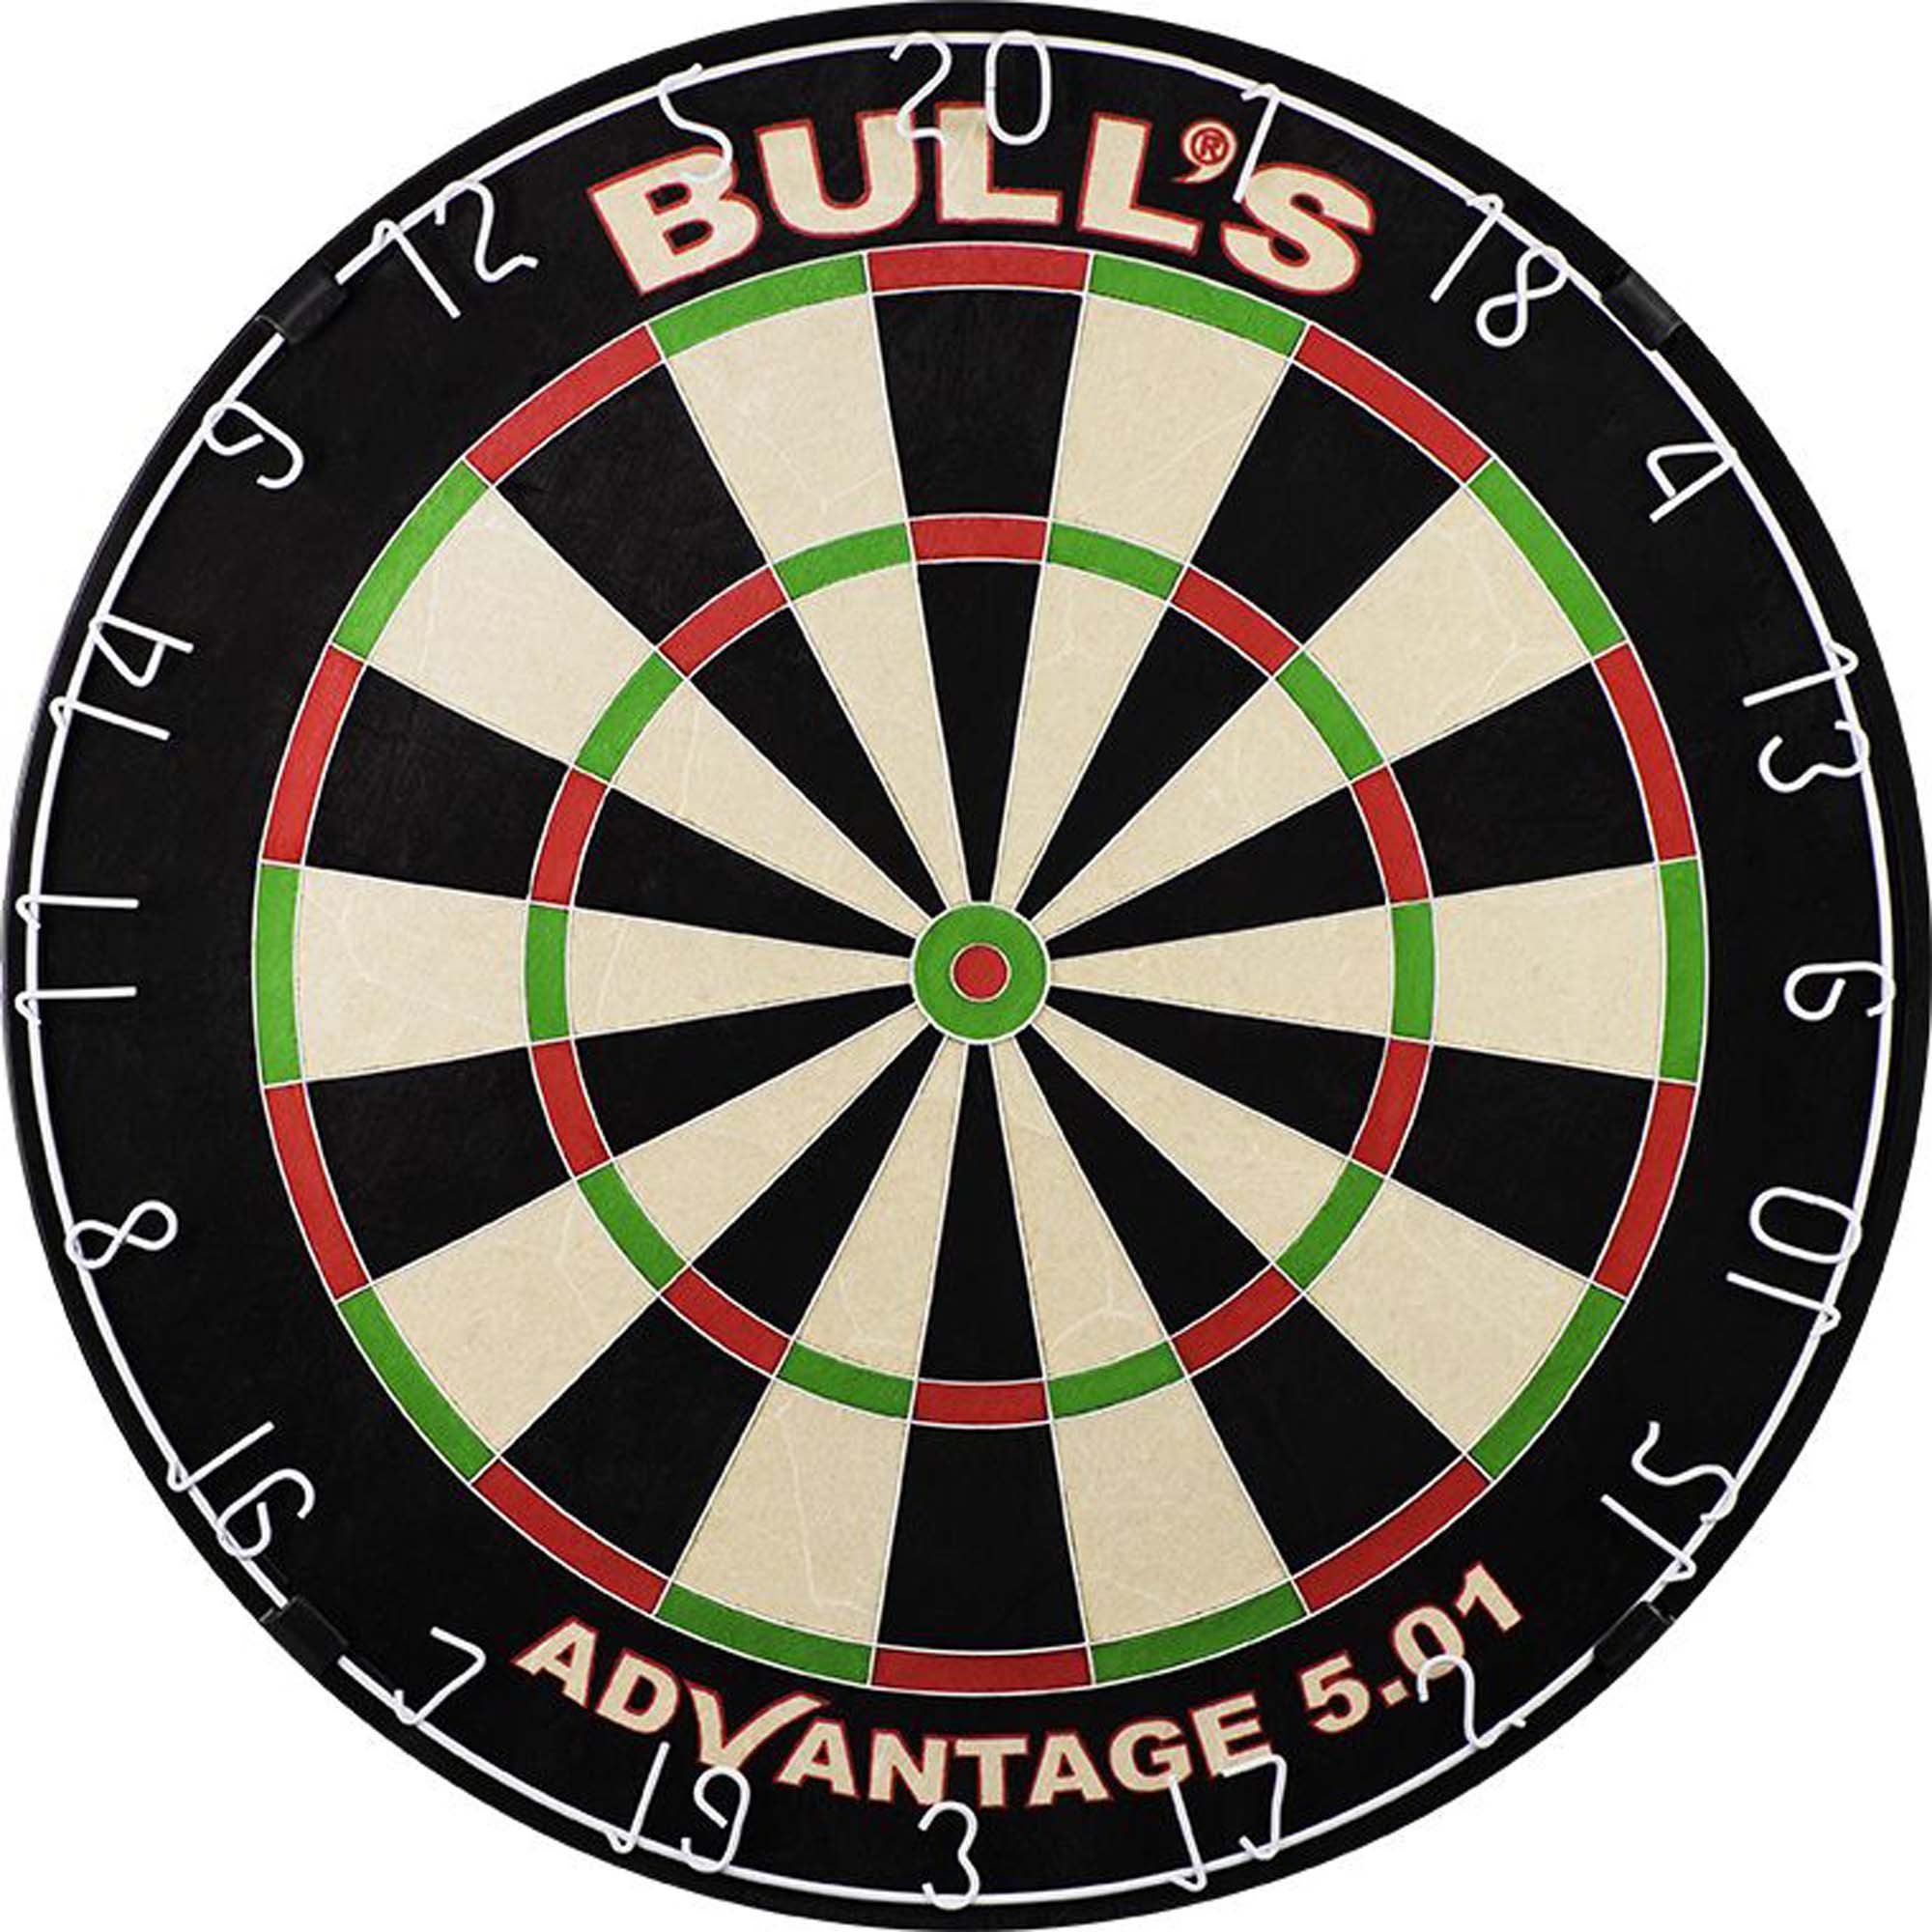 BULLS Advantage 501 Dartboard